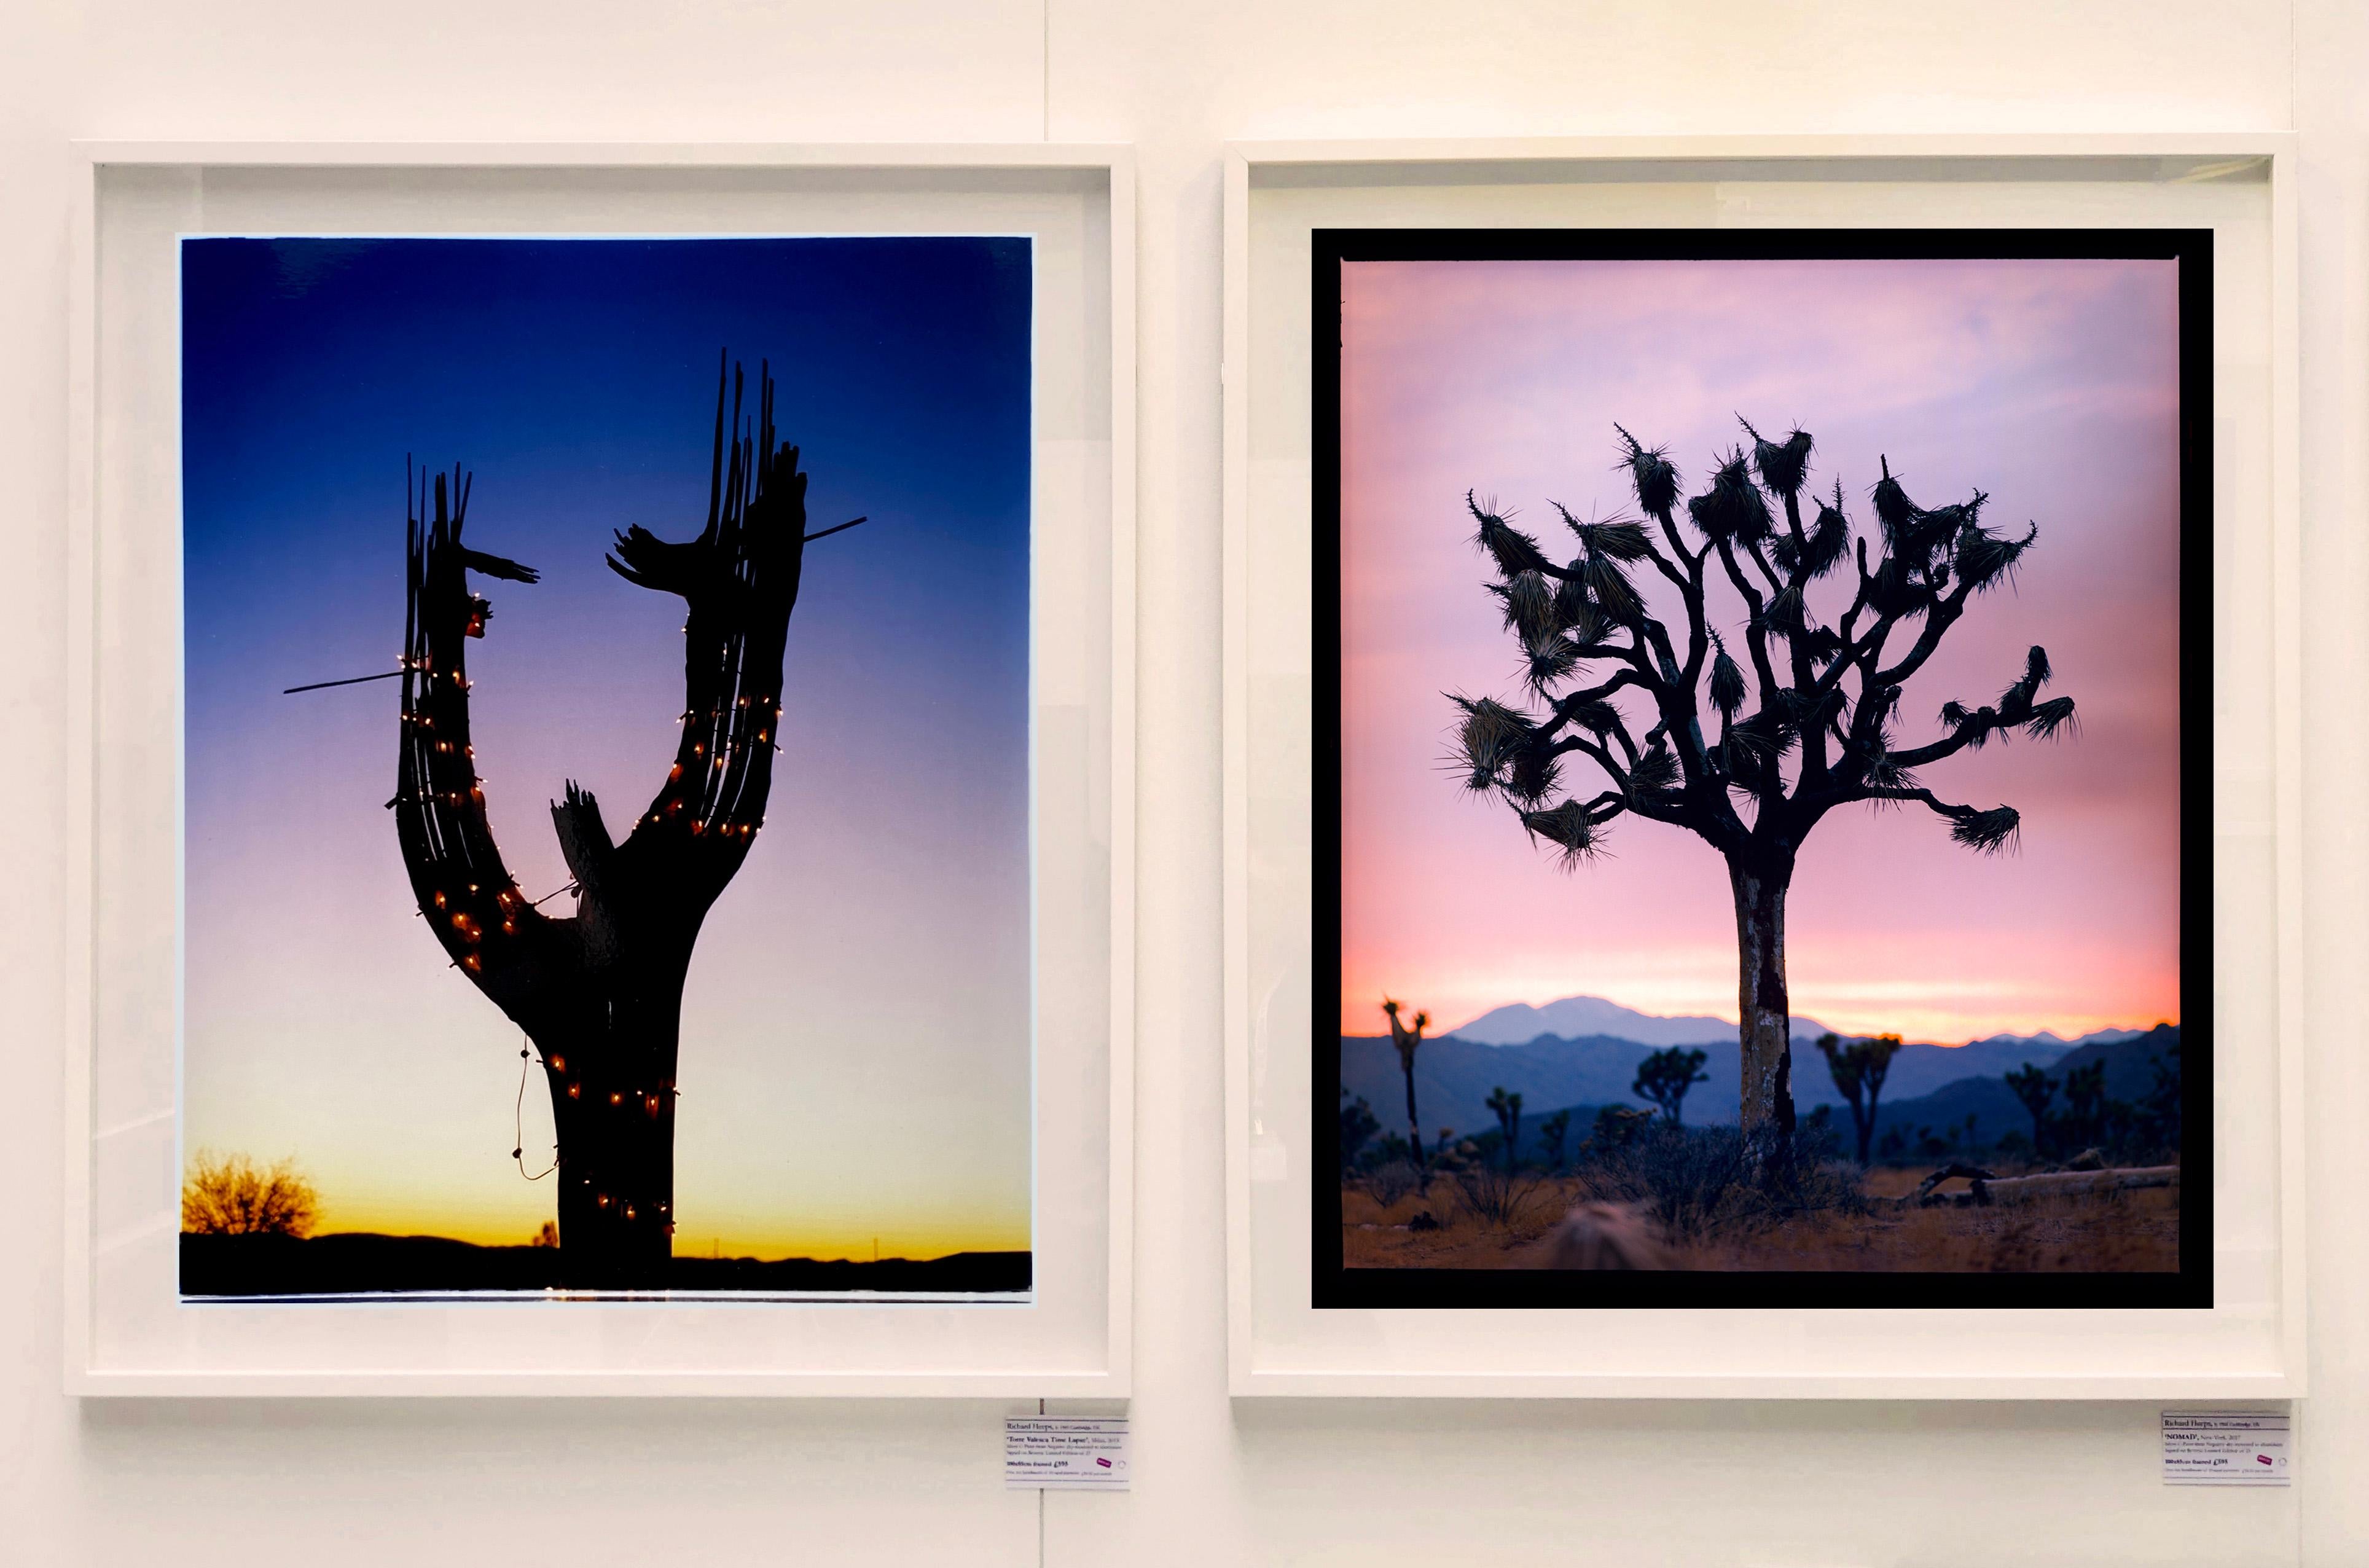 Cactus, Ajo, Arizona – amerikanische Landschaftsfarbenfotografie (Violett), Color Photograph, von Richard Heeps